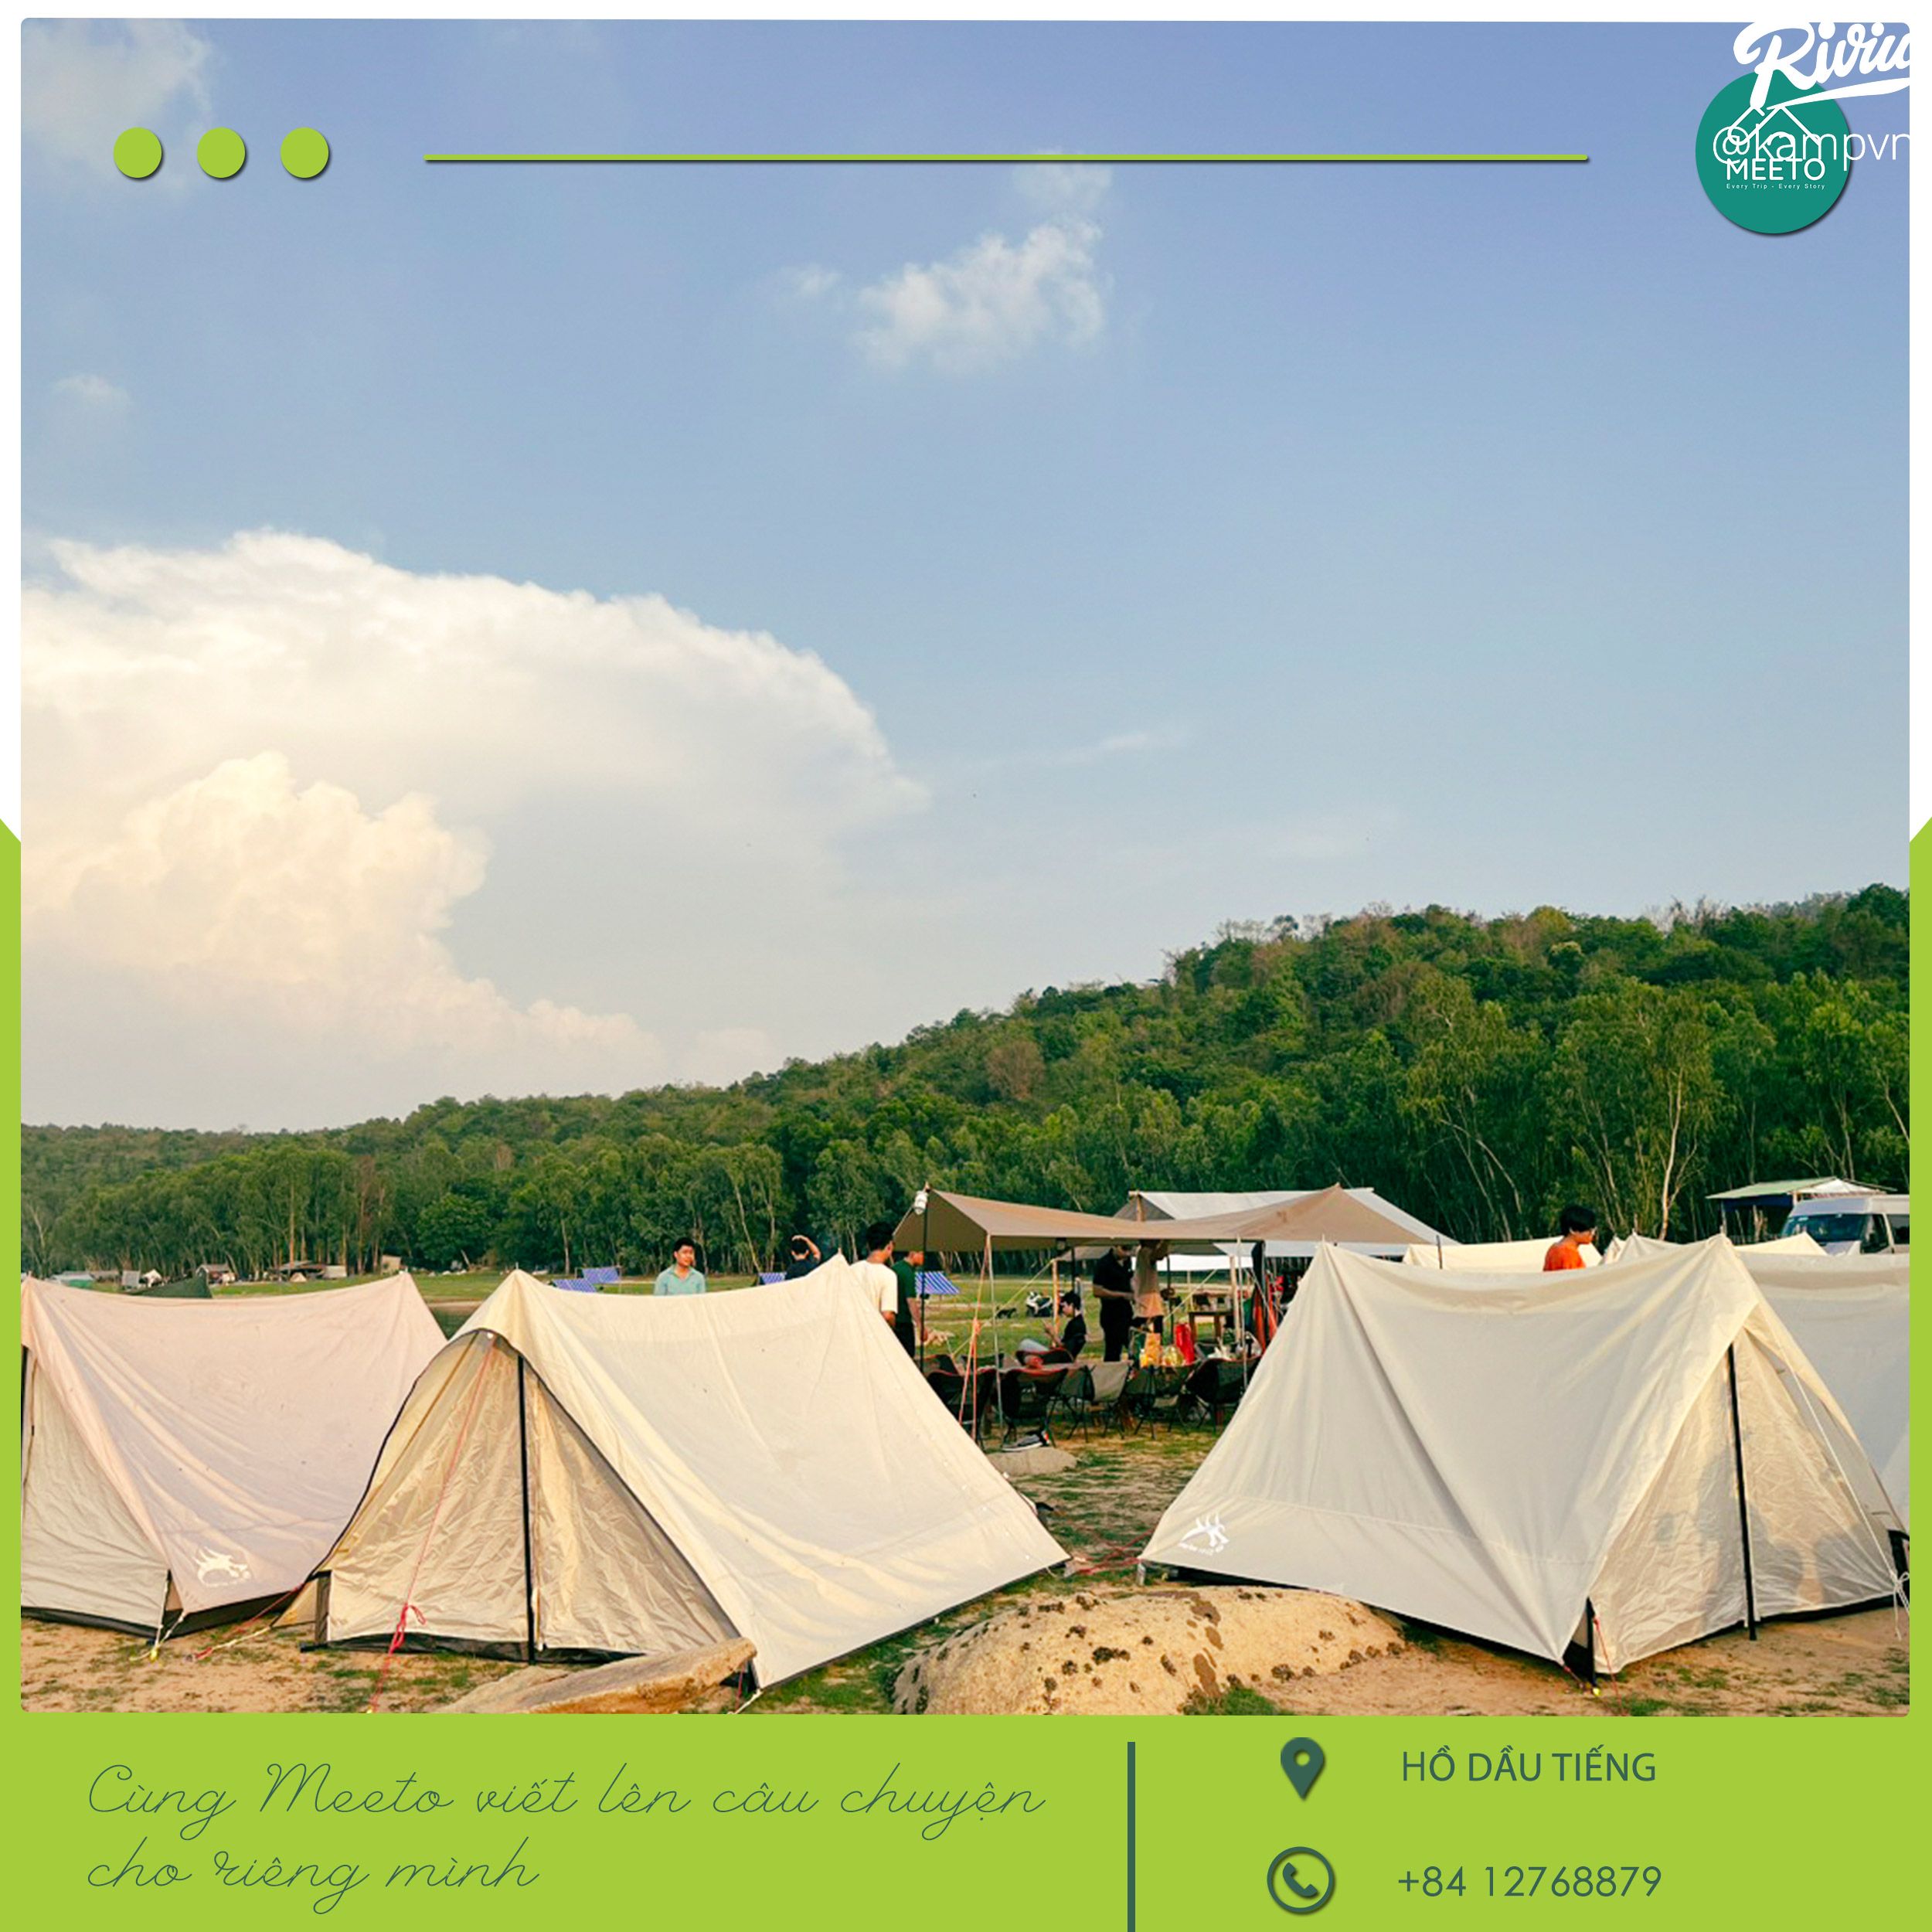 Camping Hồ Dầu Tiếng - Trải Nghiệm Cắm Trại Hồ Dầu Tiếng Tại Meeto Camping  | Riviu.Vn